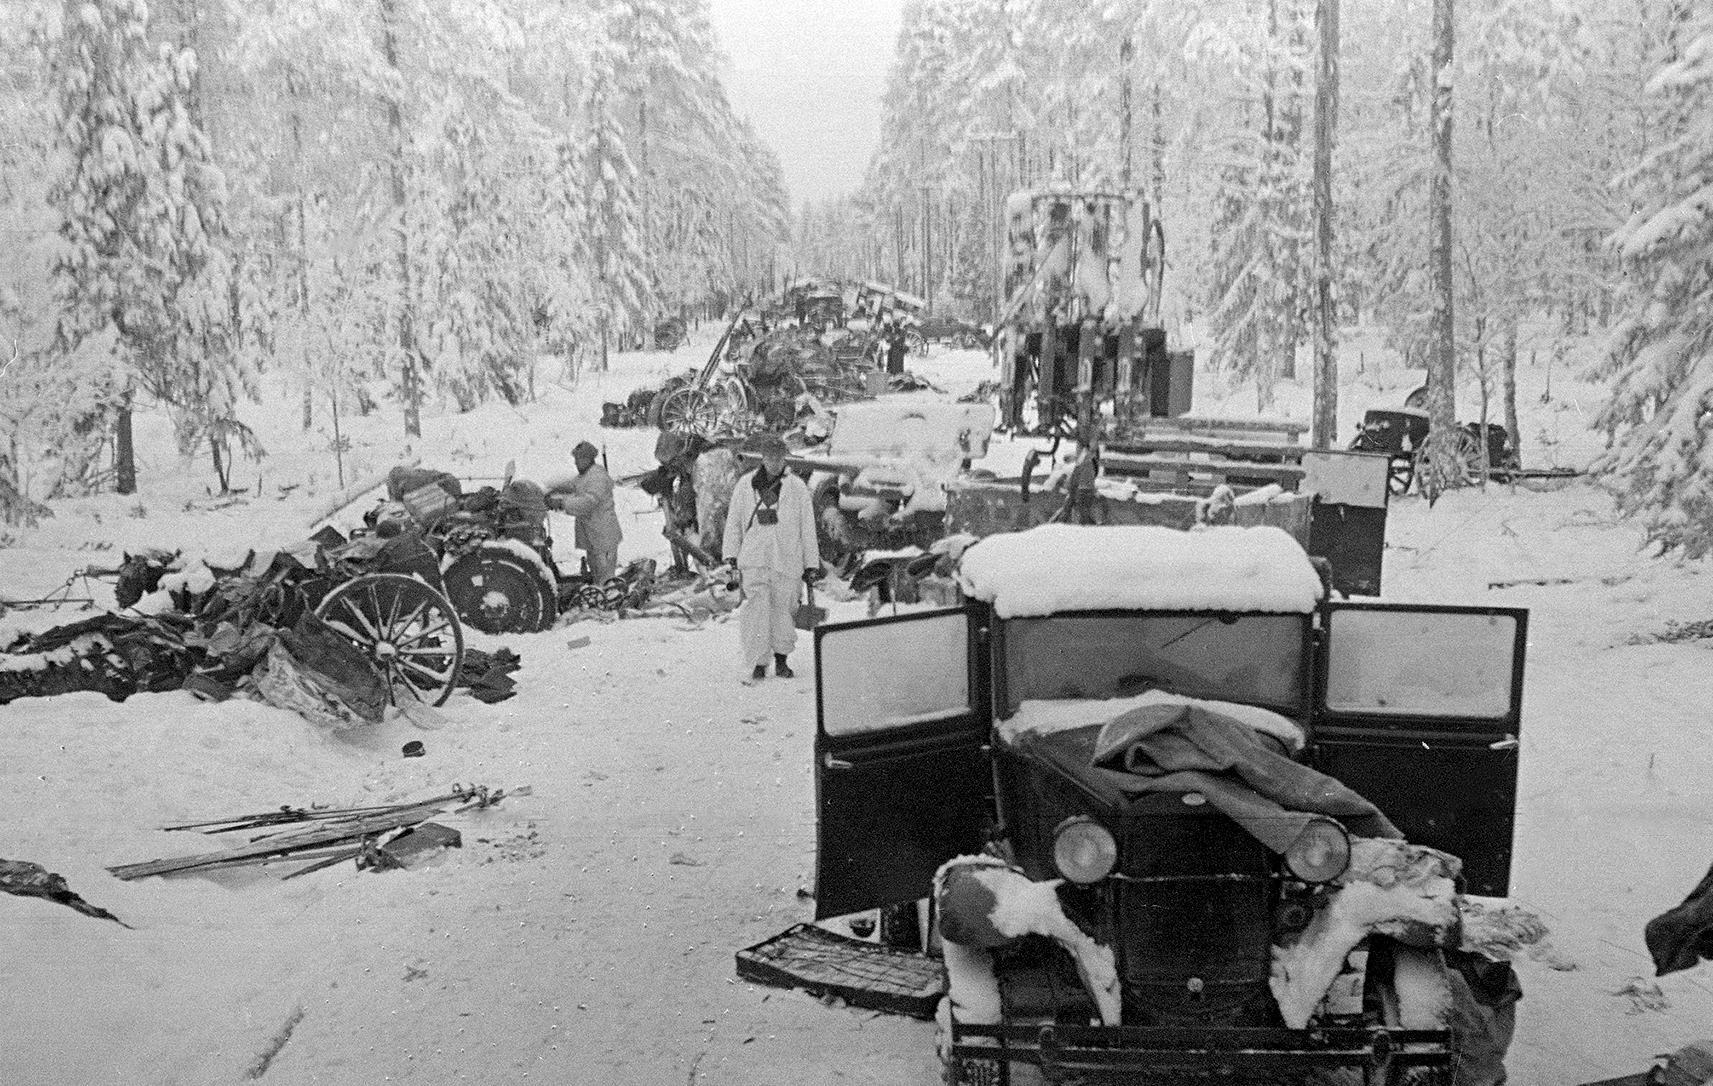 Разбитая колонна советской 44-й стрелковой дивизии, которую перебросили в финские снега из Украины (Суомуссалми, декабрь, 1939)